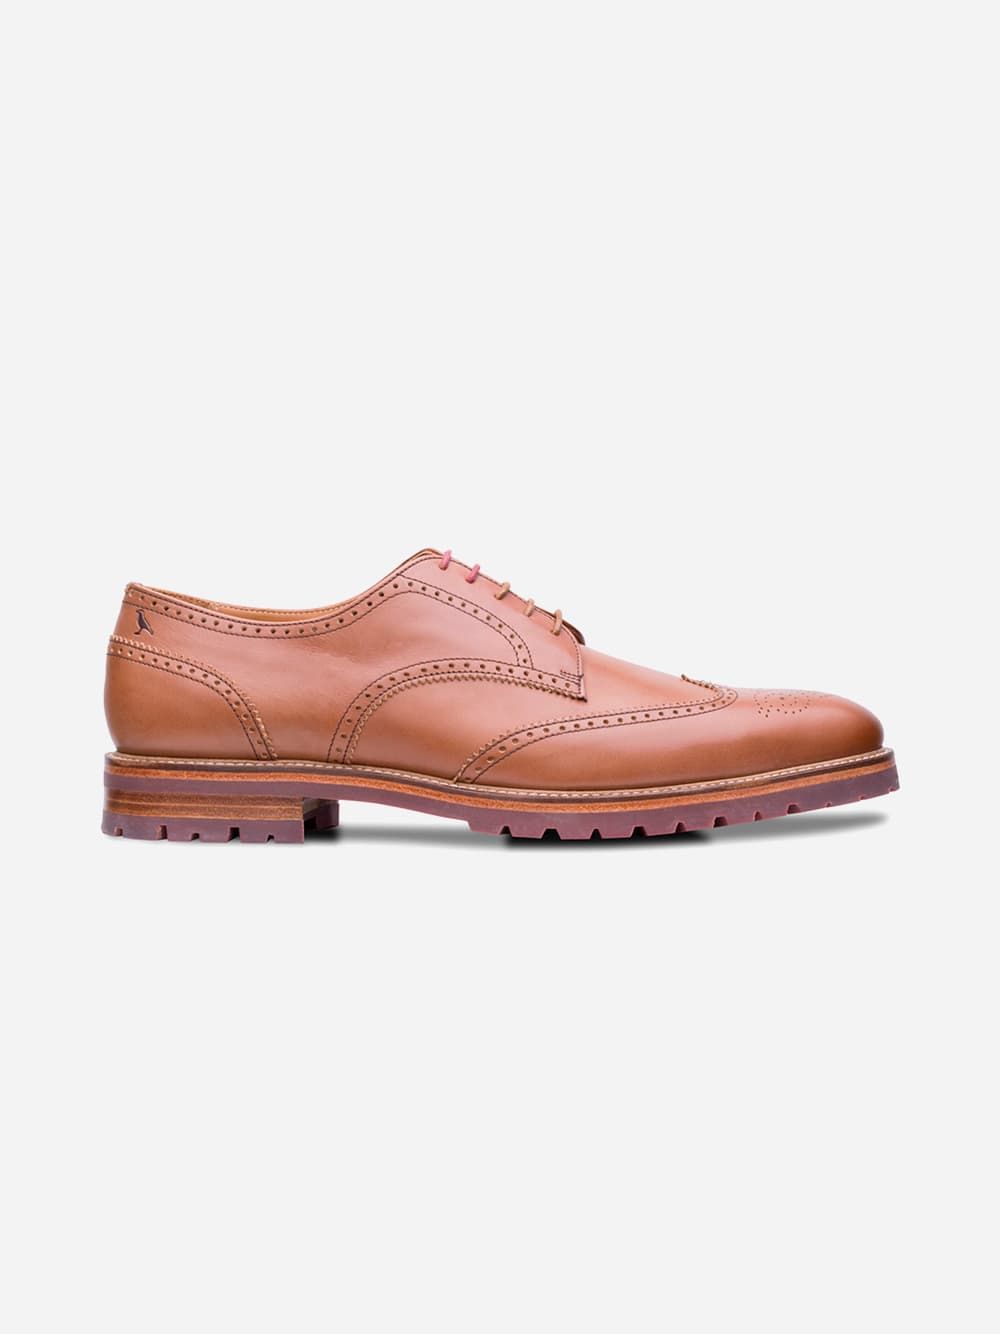 Brown Leather Shoes Barroca | Saint Vincent